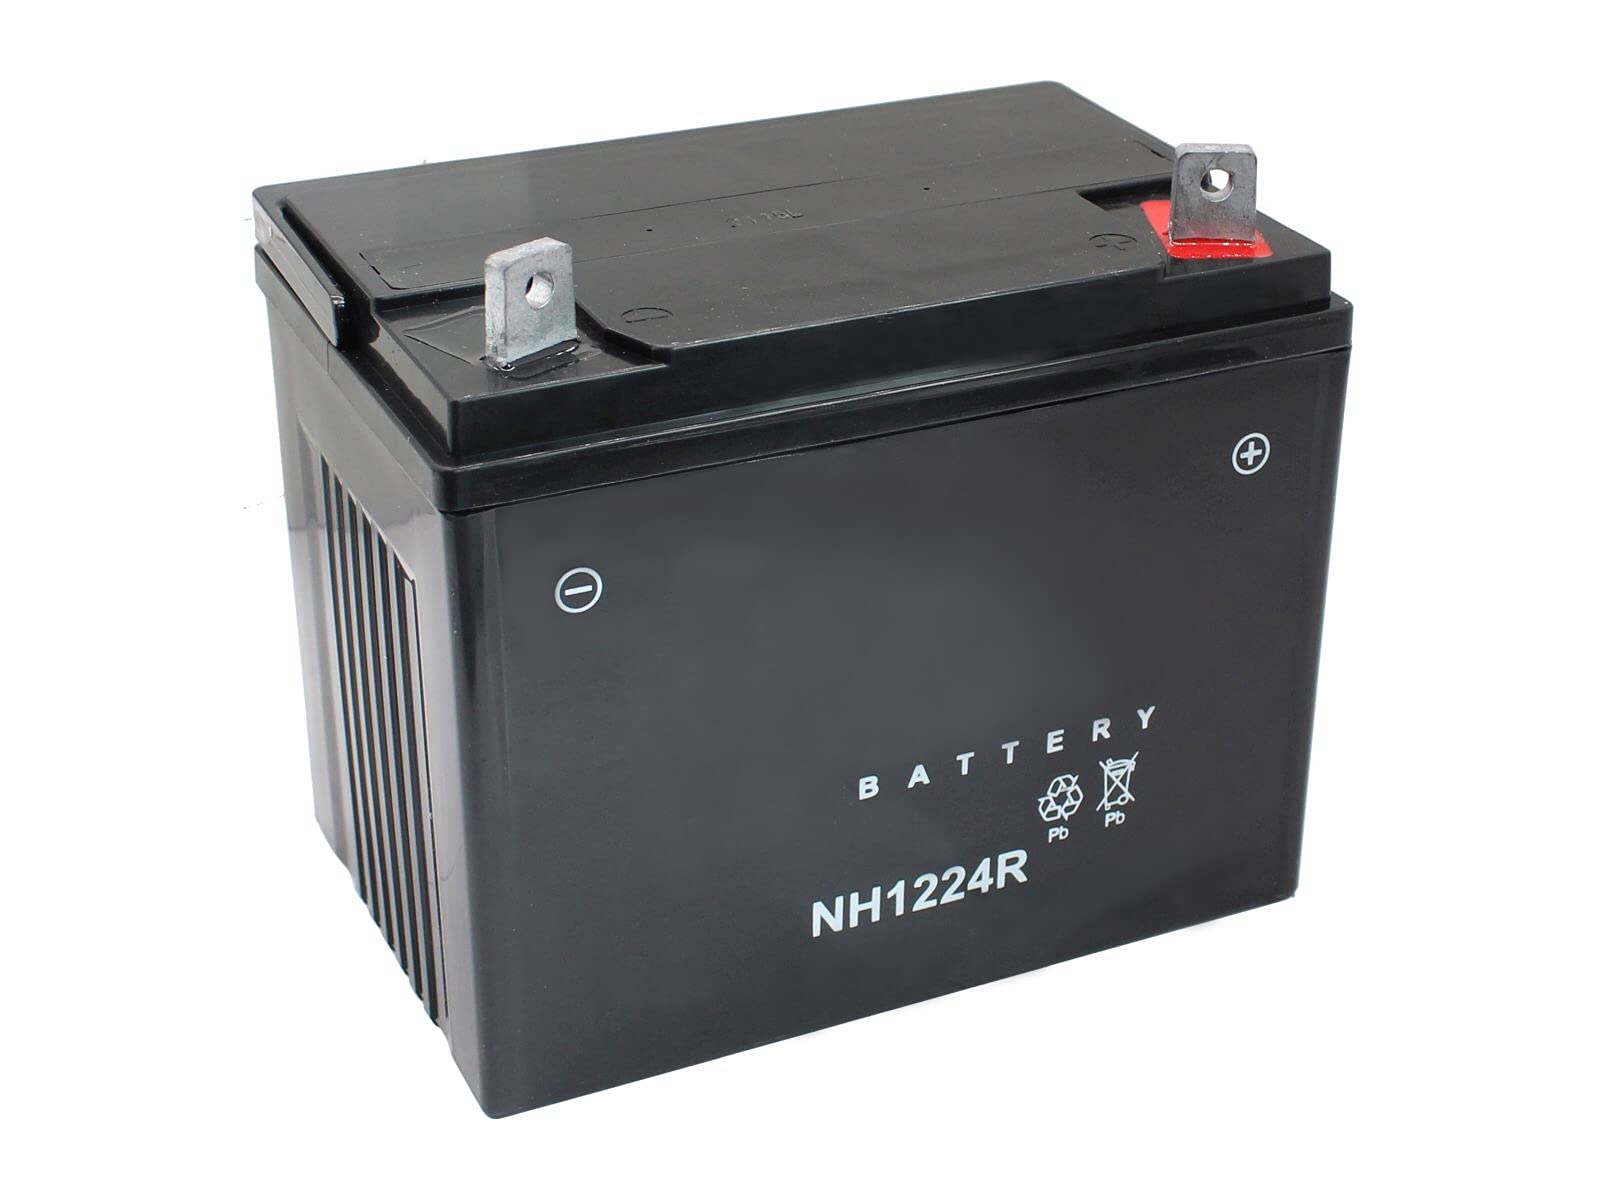 SECURA Batterie 12V 22Ah (+ Pol Rechts) kompatibel mit Yard Pro 12HP92 Rasentraktor